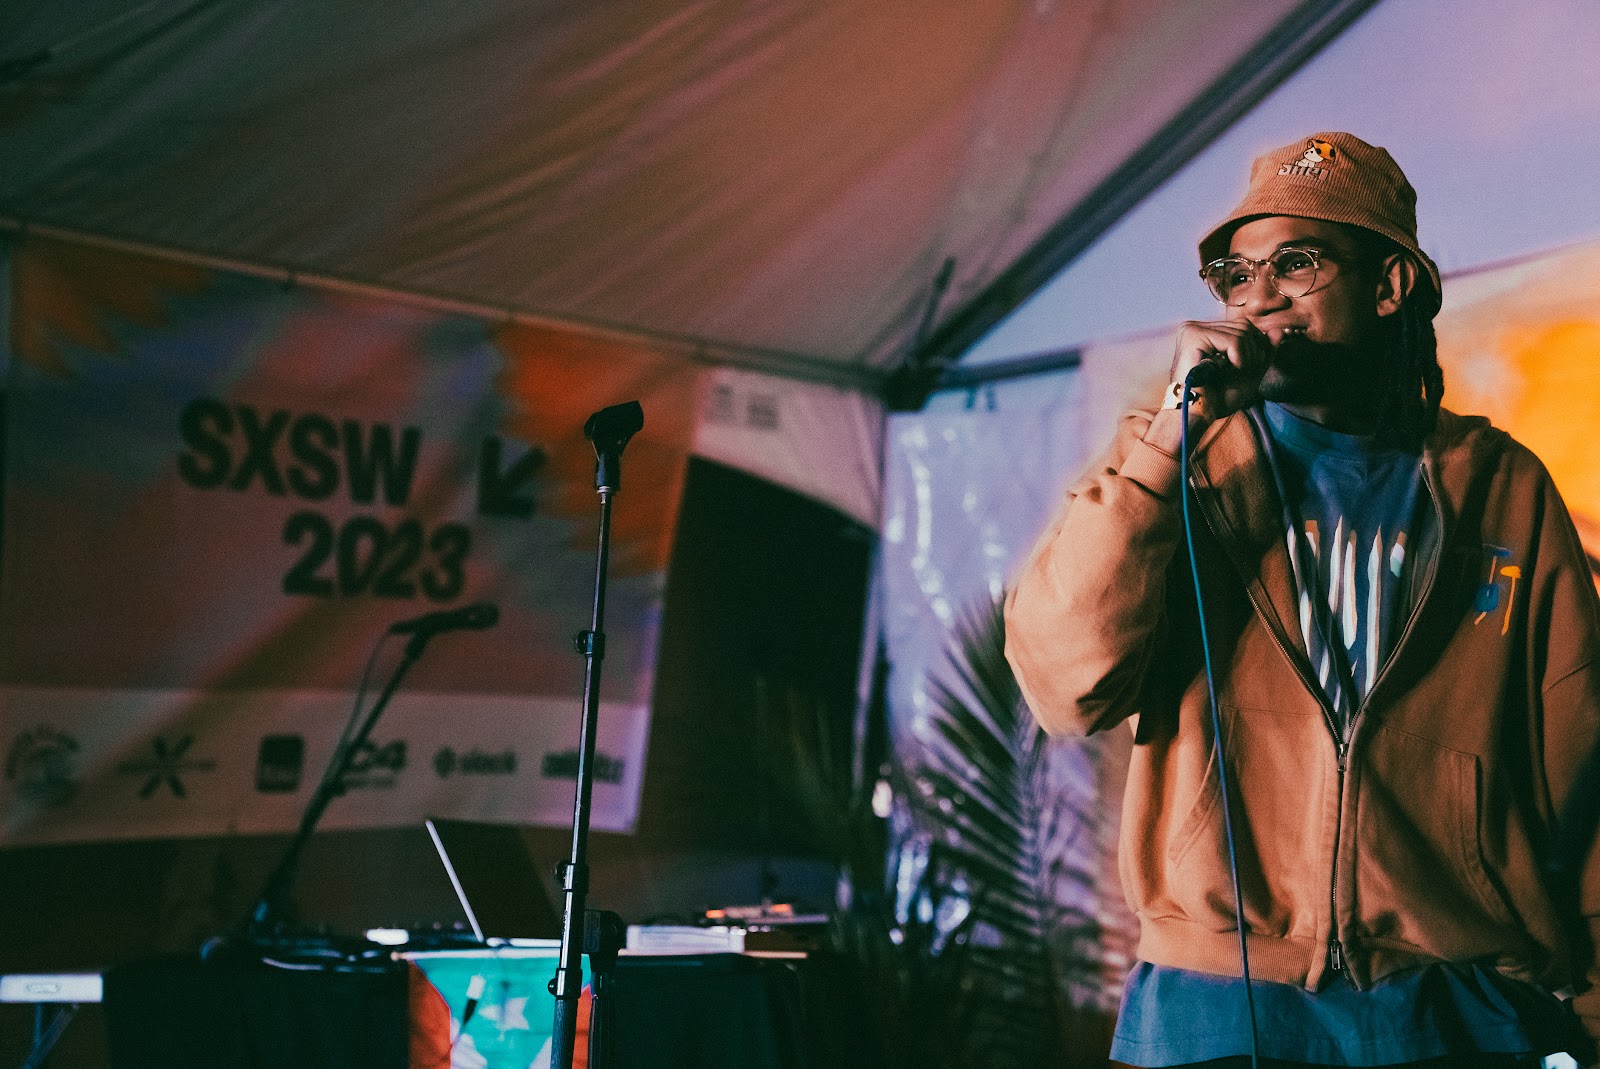  El puertorriqueño Enyel C cautiva a SXSW con su sonido caribeño en el showcase “La Subcultura”  